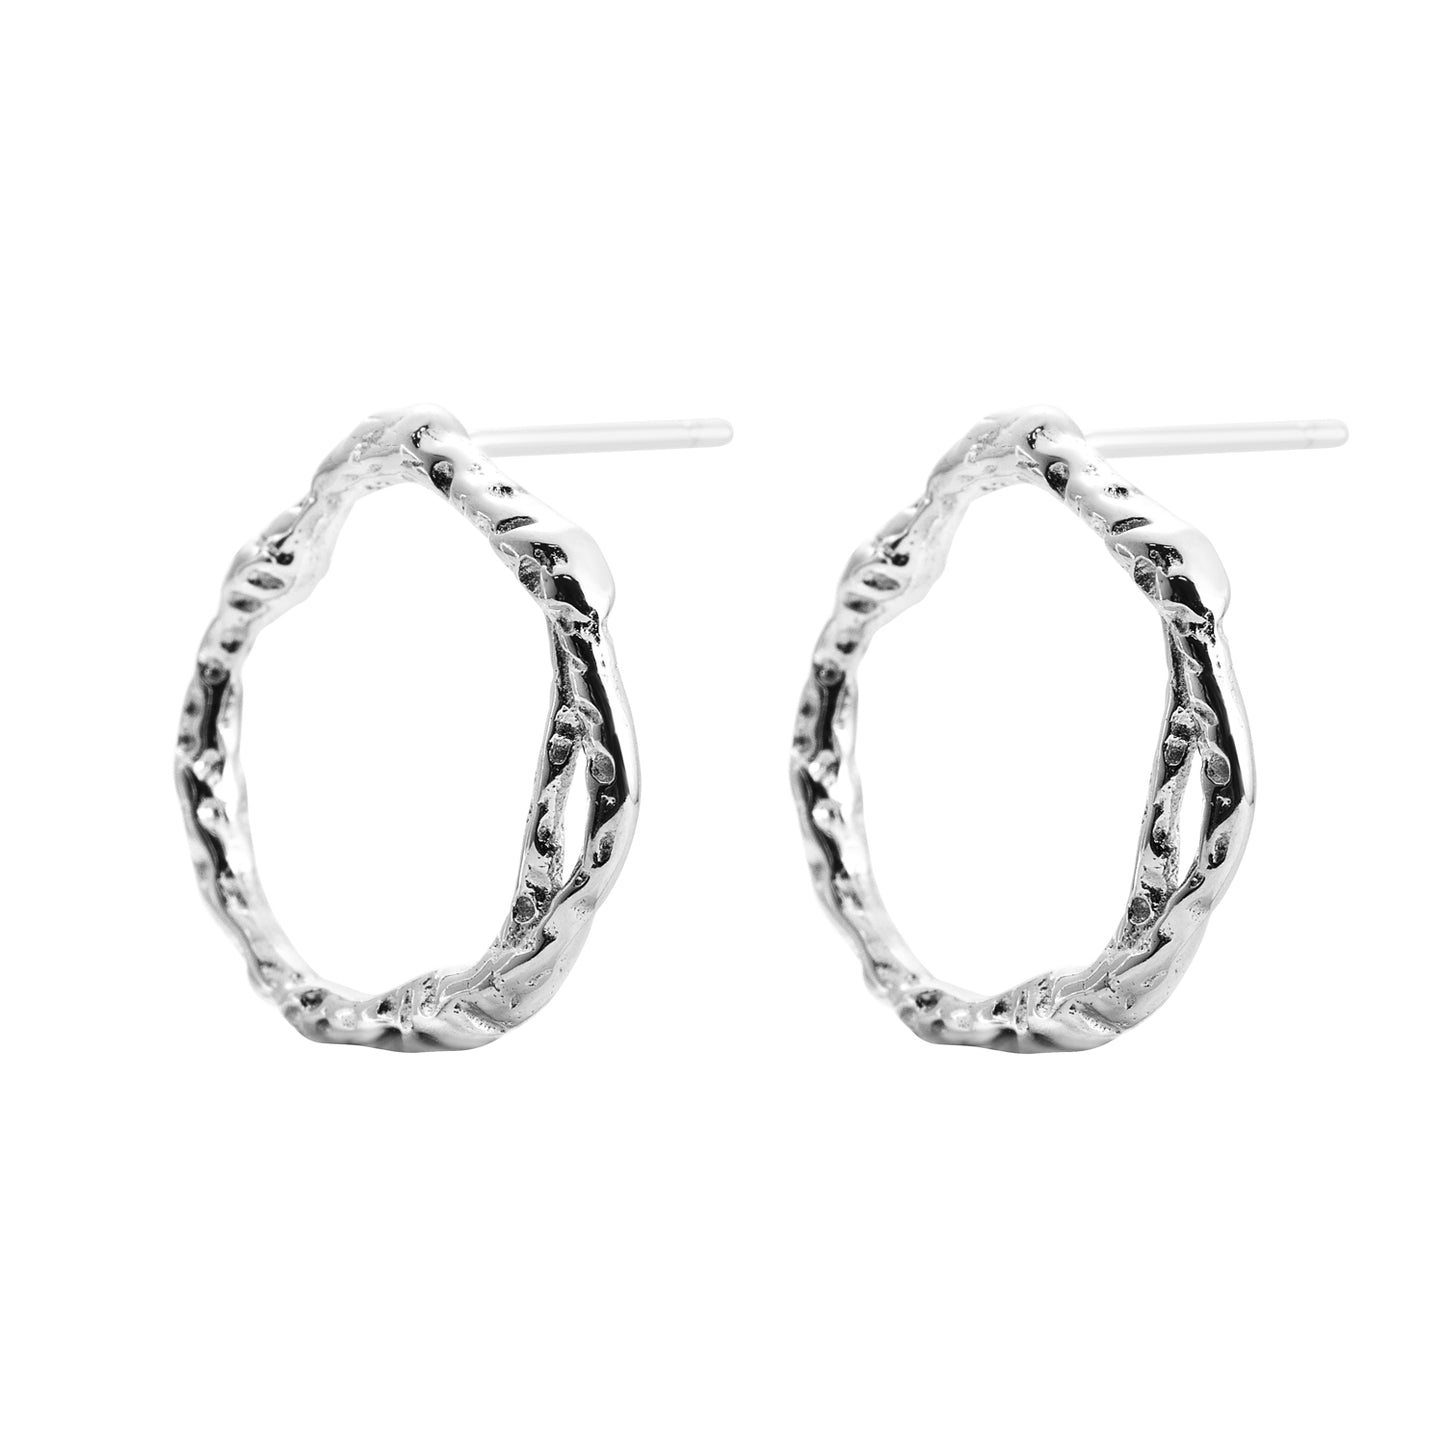 Echo silver stud earrings